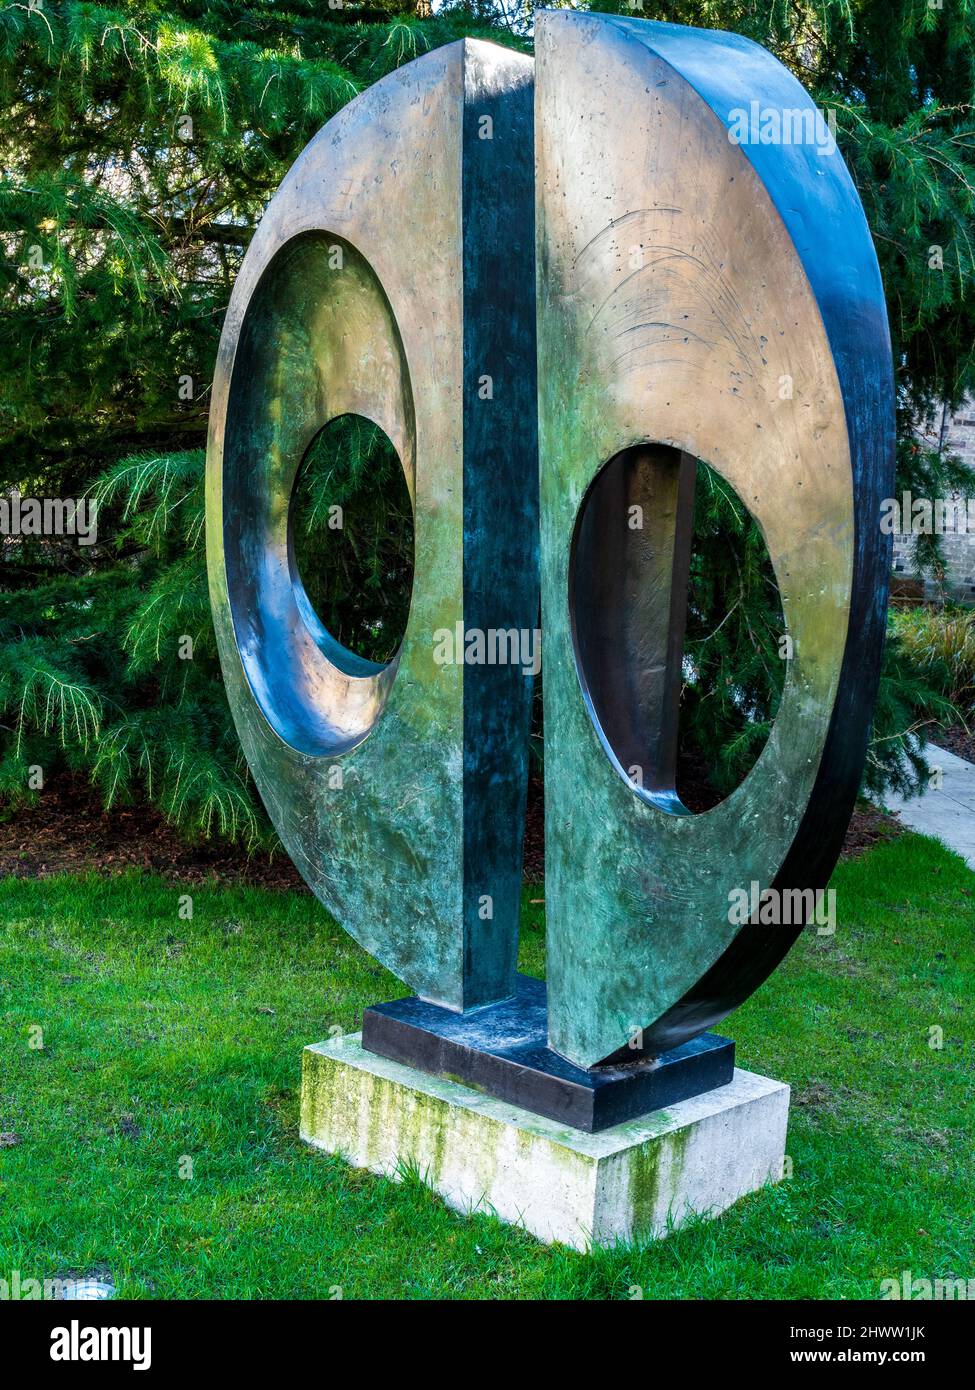 Barbara Hepworth escultura dos formularios (círculo) dividido por el escultor británico Dame Barbara Hepworth (1903-75) en los jardines de Downing College de Cambridge Foto de stock